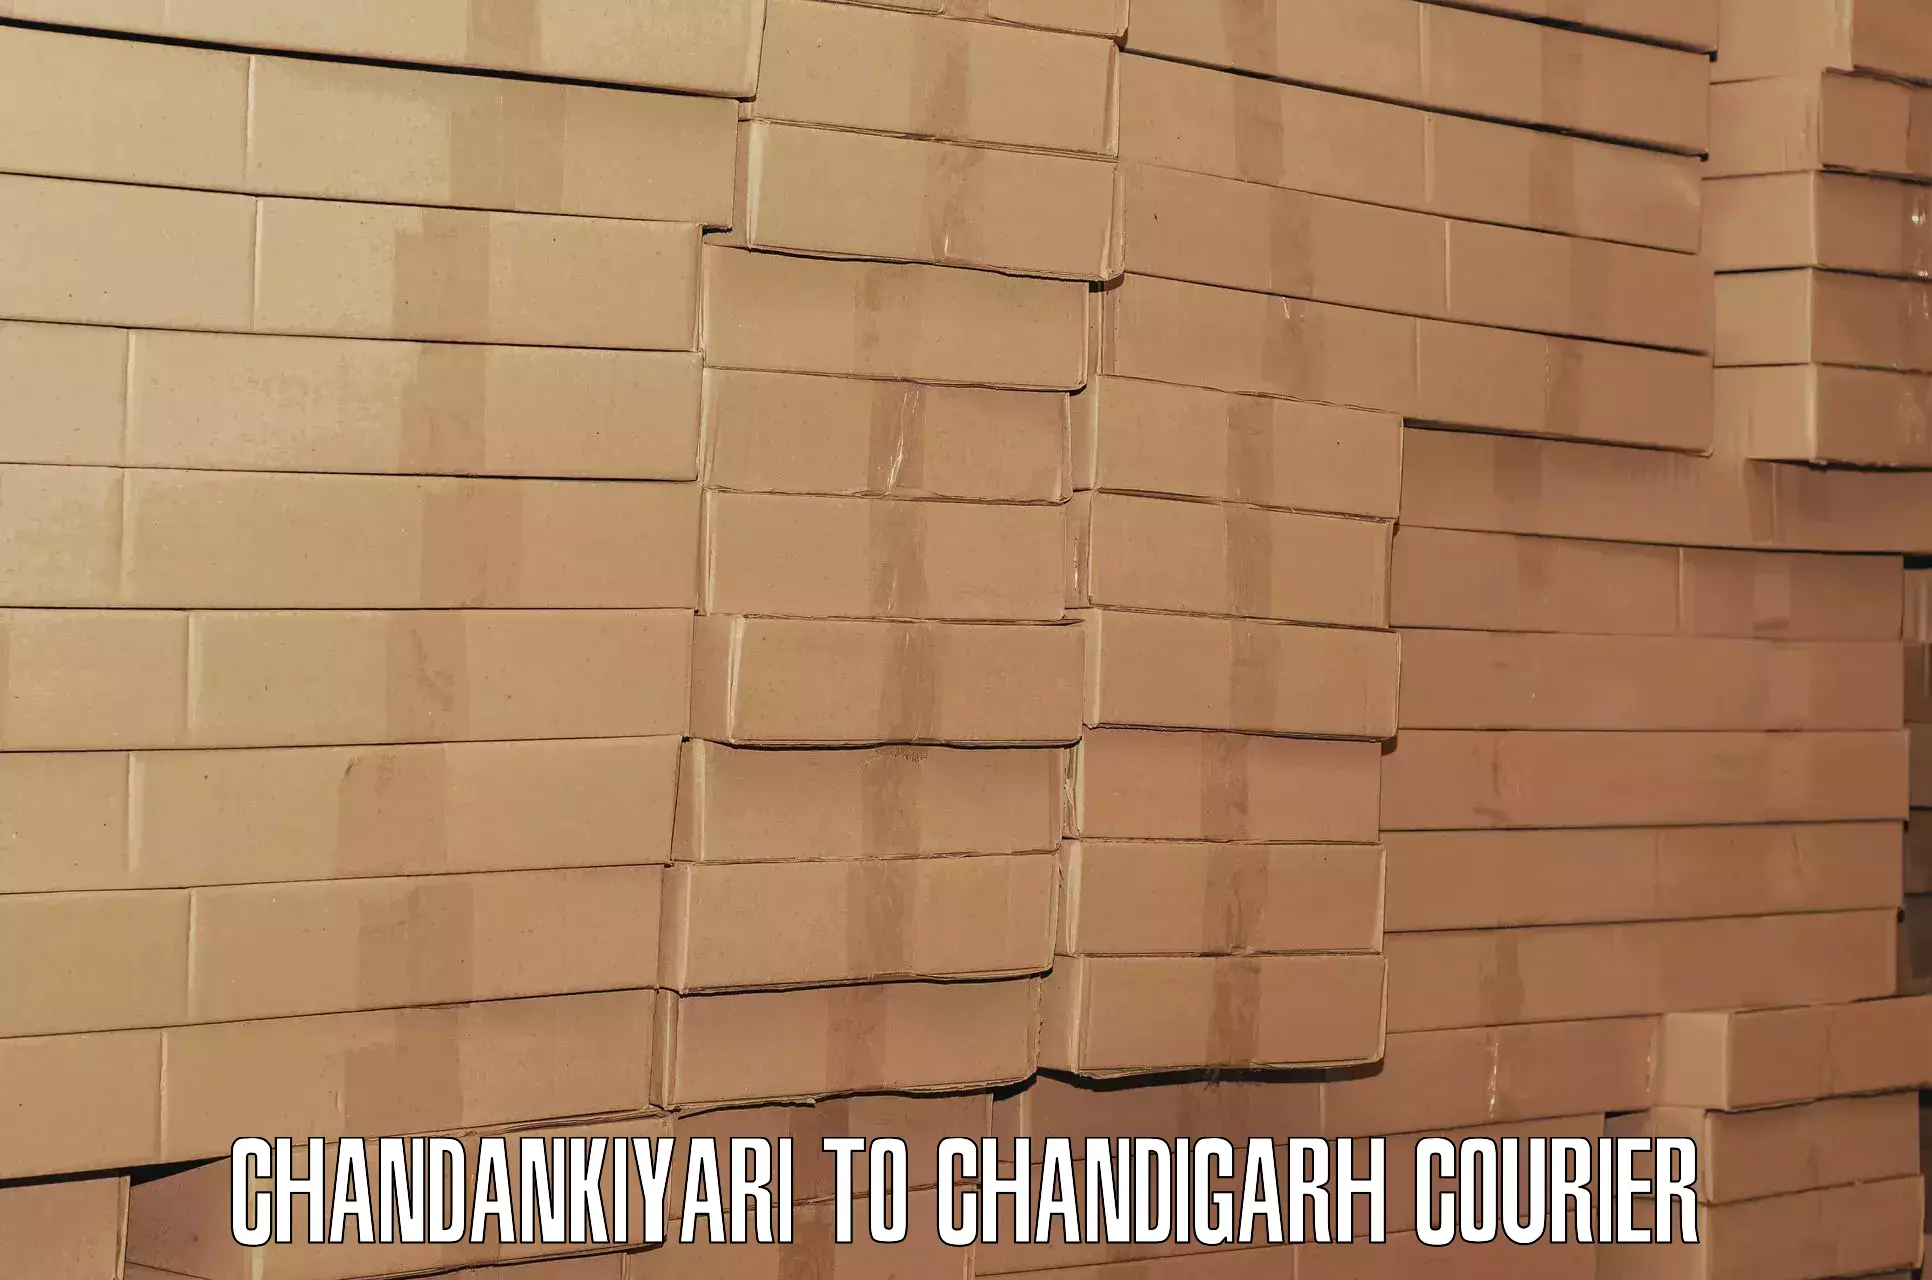 Baggage courier operations Chandankiyari to Chandigarh